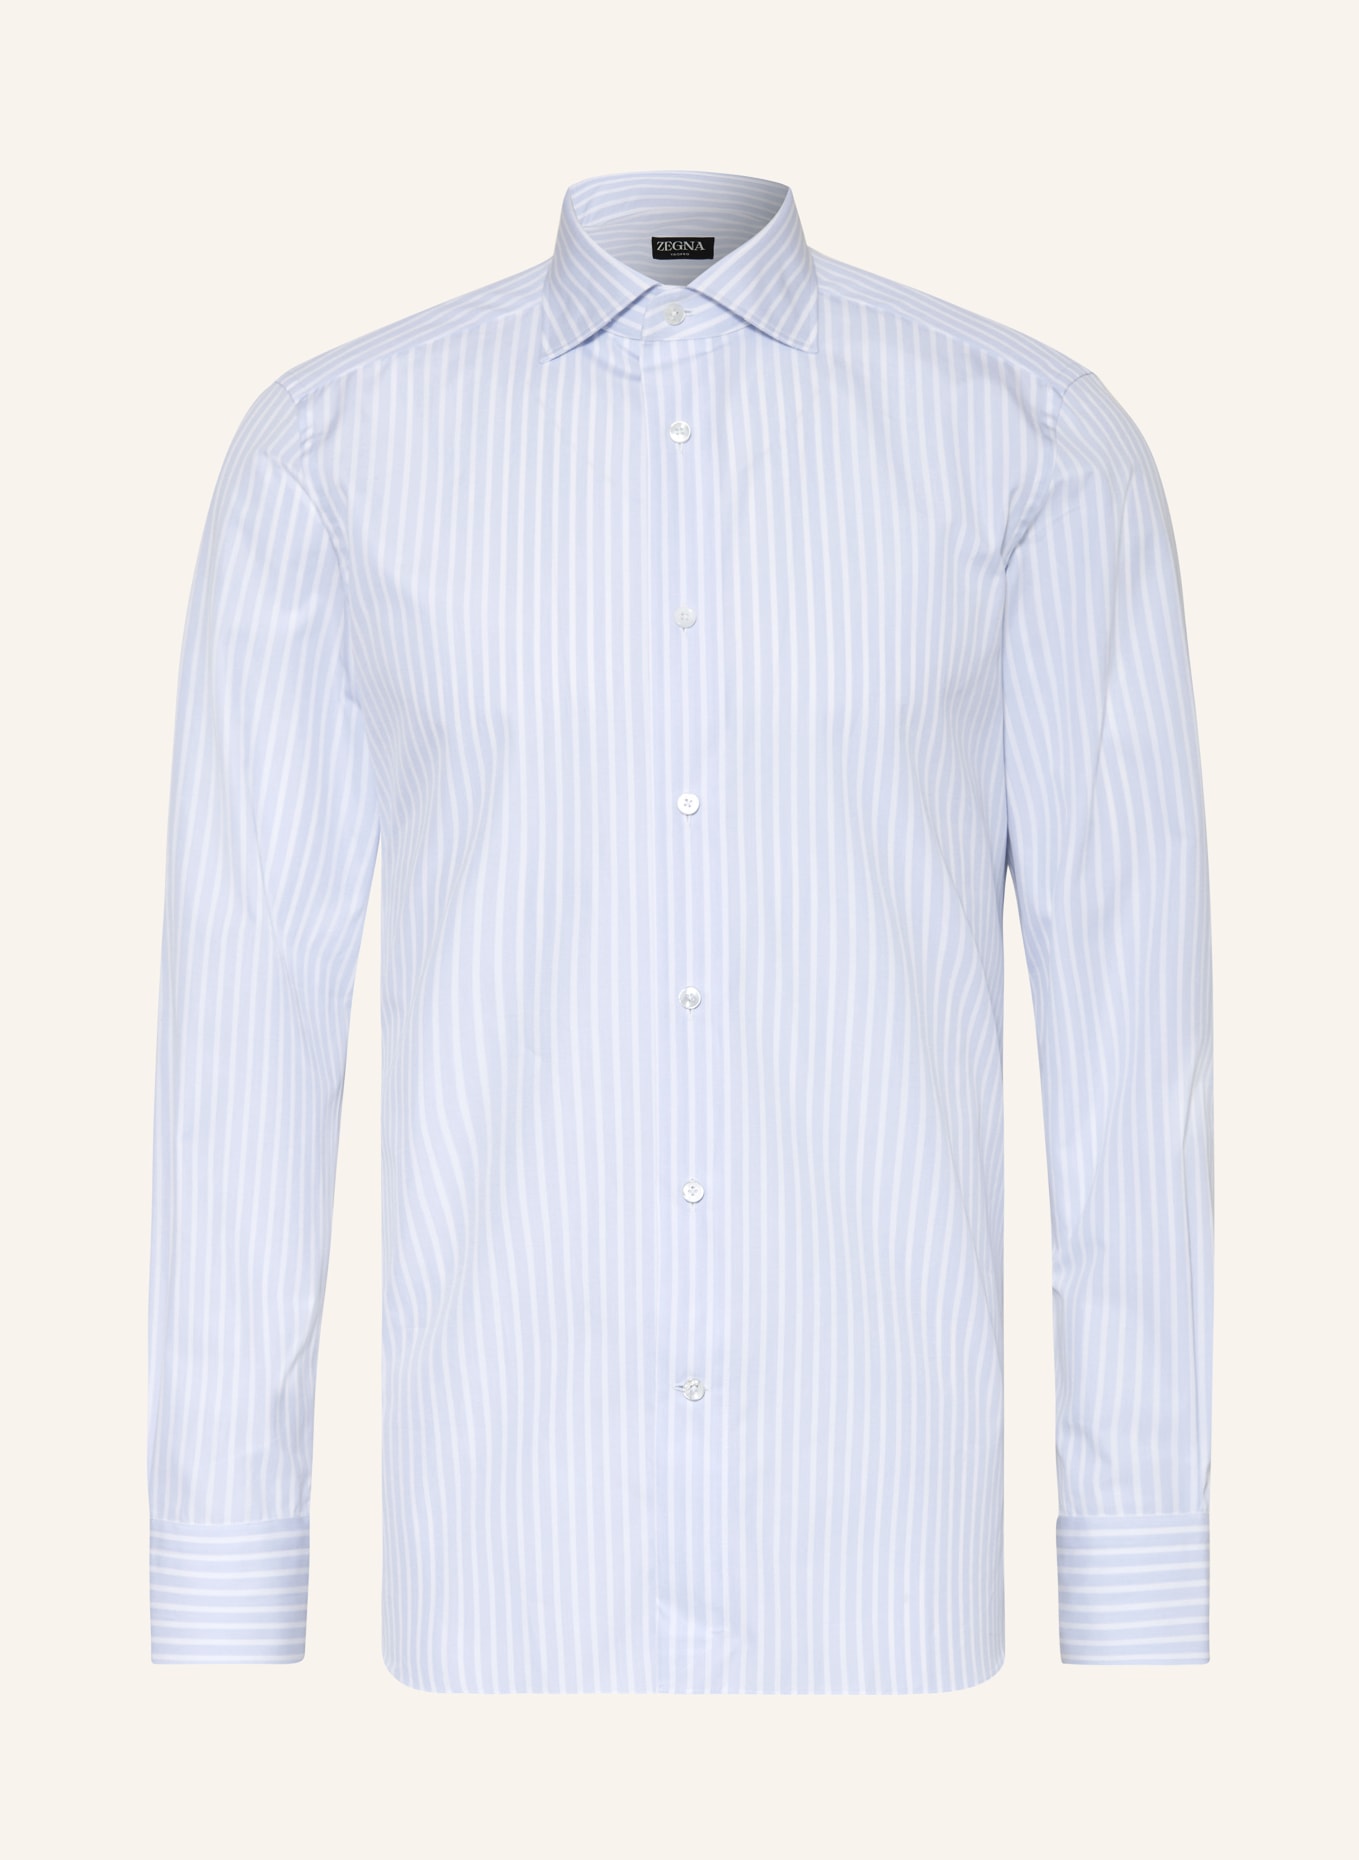 ZEGNA Shirt regular fit, Color: LIGHT BLUE/ WHITE (Image 1)